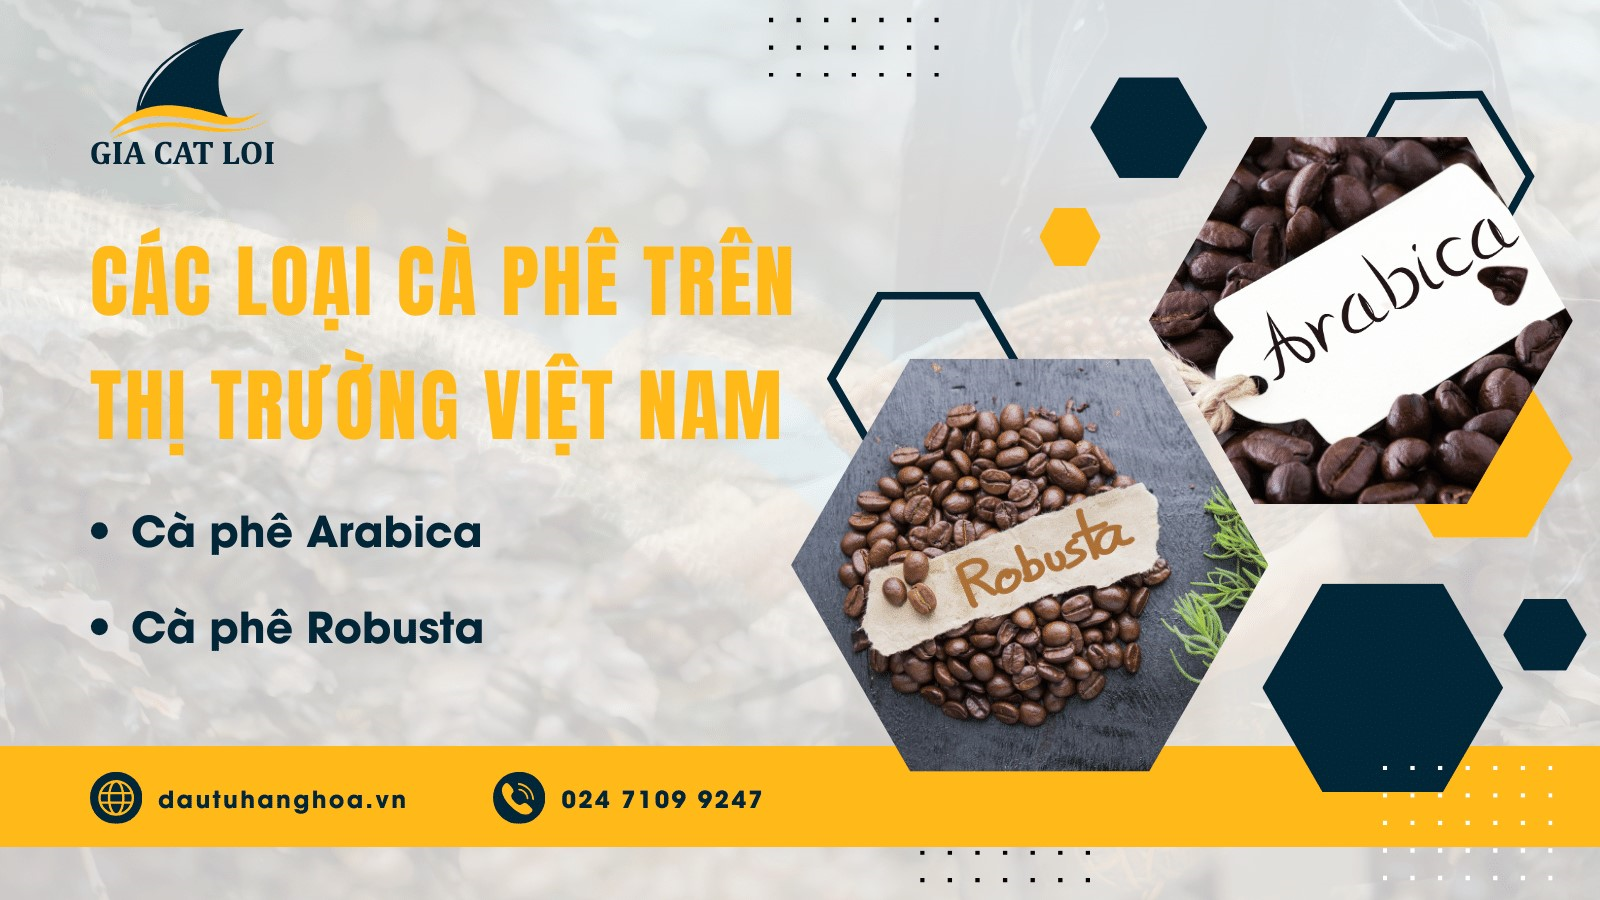 Các loại cà phê trên thị trường Việt Nam